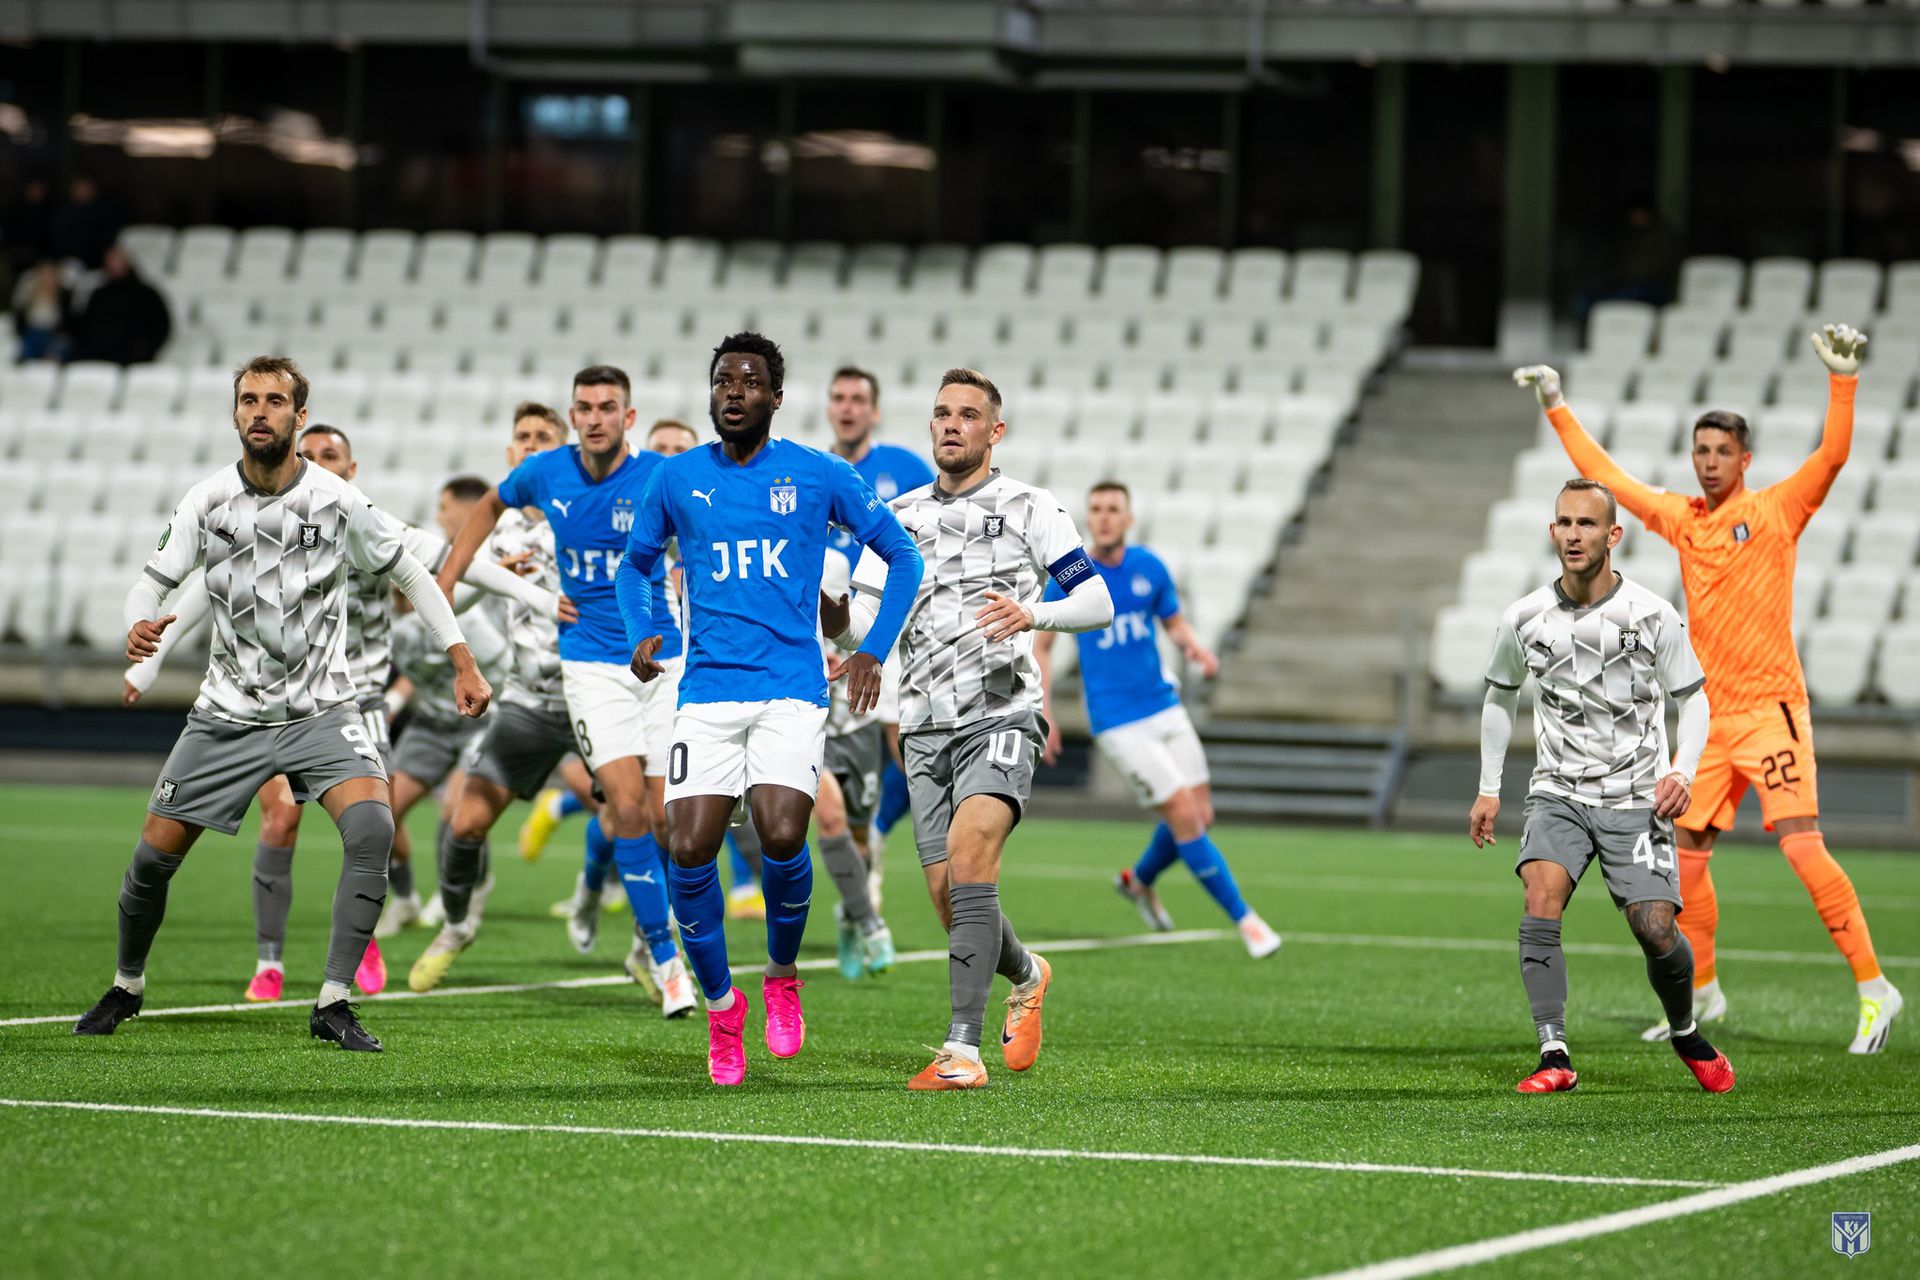 A feröerieknek a Slovan ellen nagy szükségük lenne a három pontra /Fotó: Klaksvík/Facebook